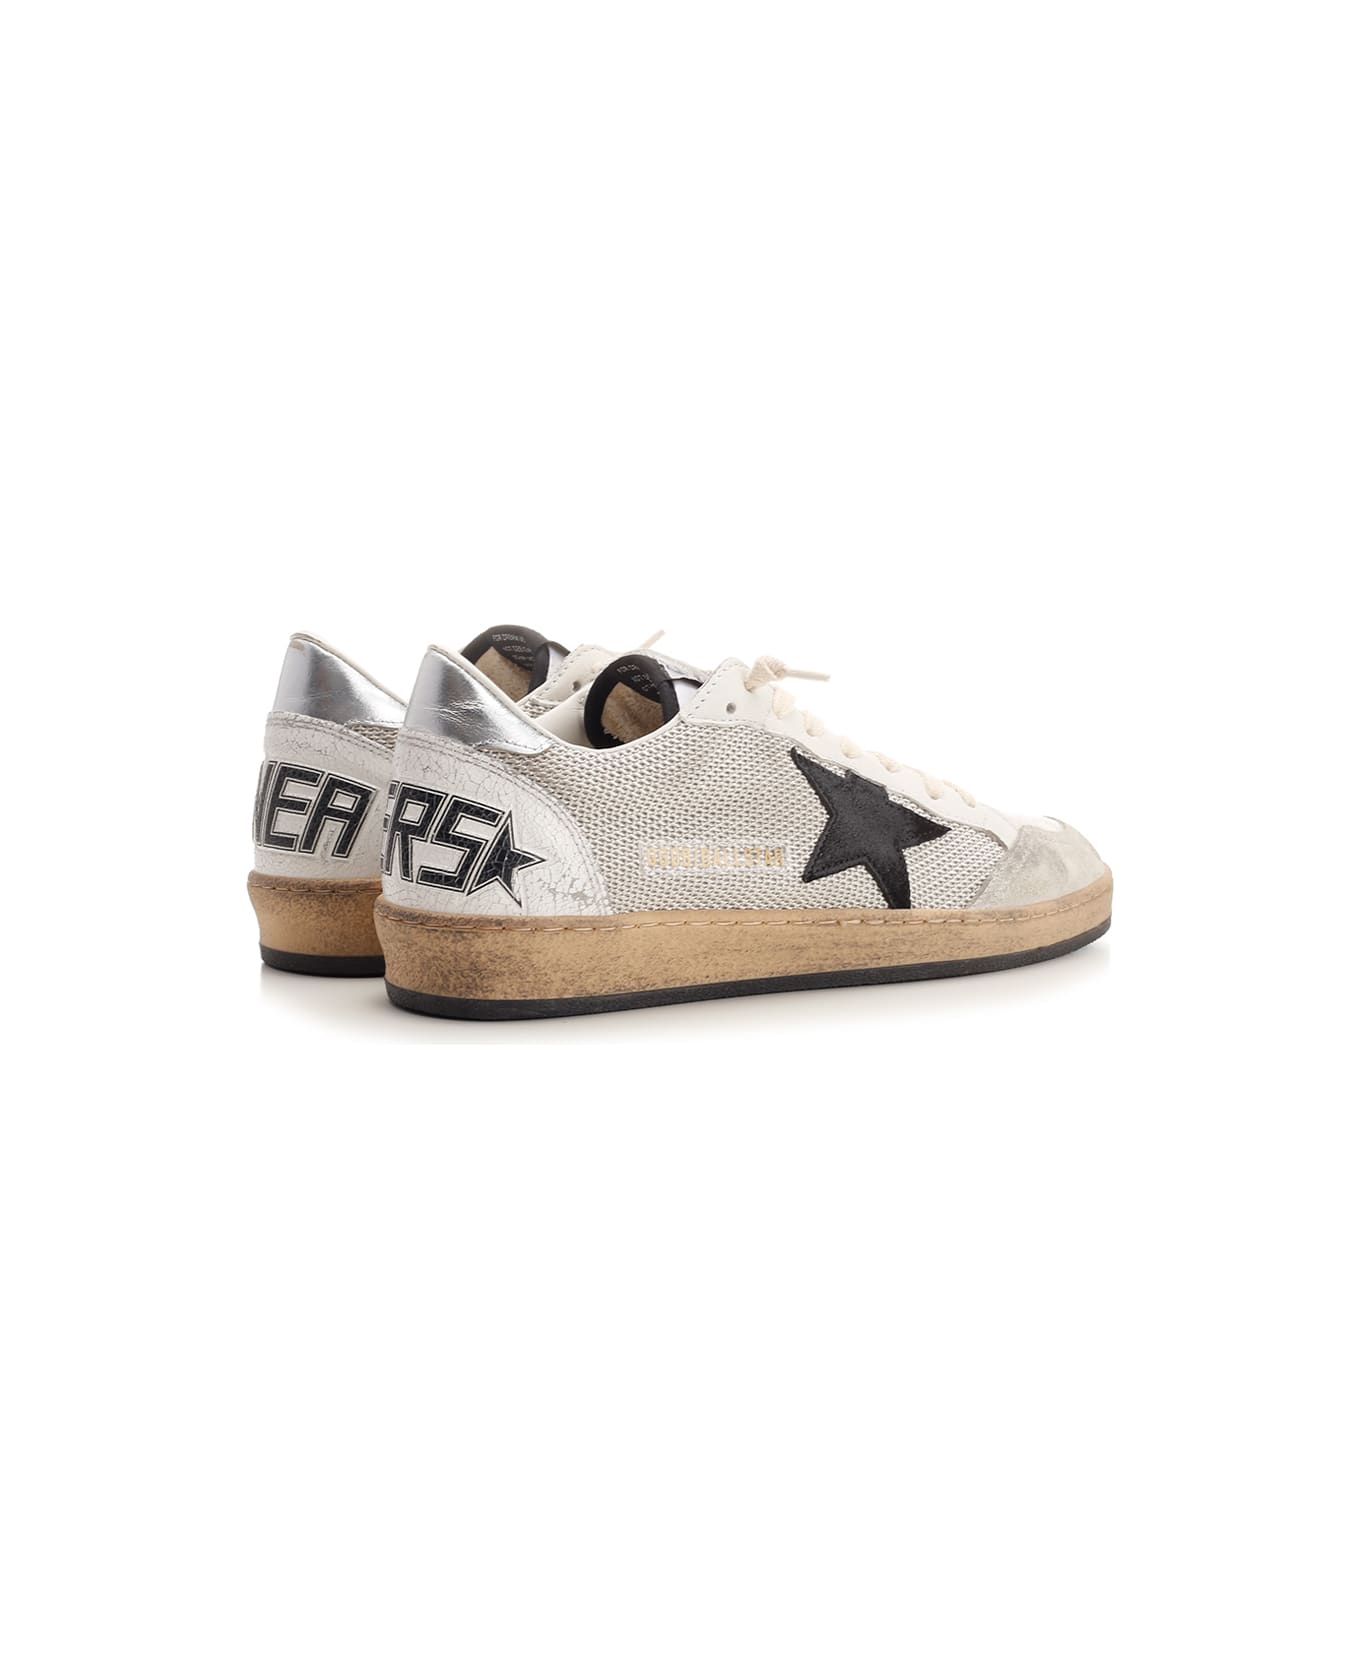 Golden Goose Ball Star Sneakers - Light Silver/Black/White/Silve